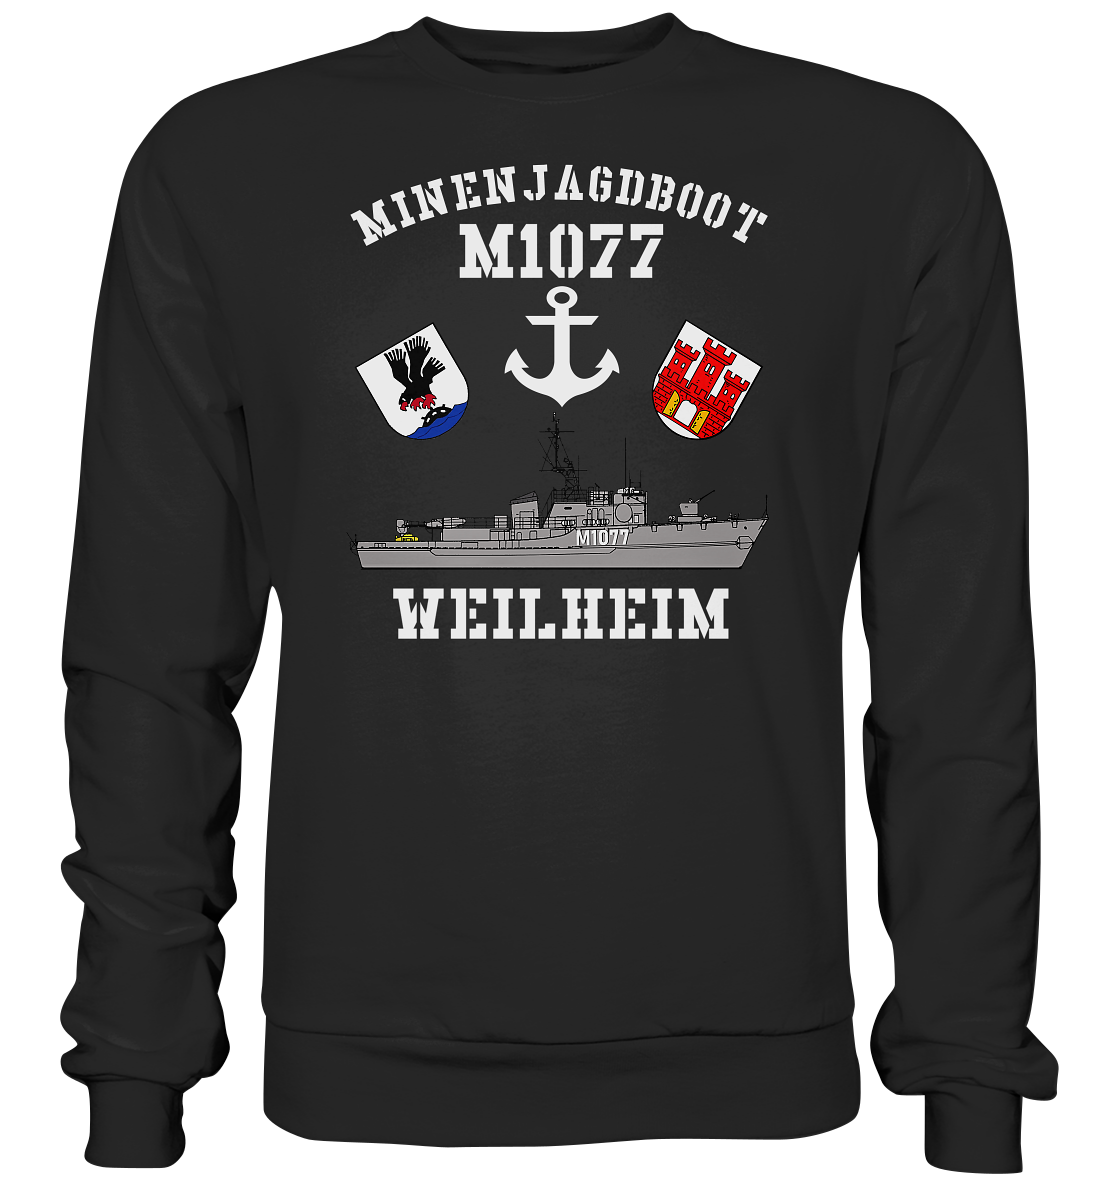 Mij.-Boot M1077 WEILHEIM - Premium Sweatshirt